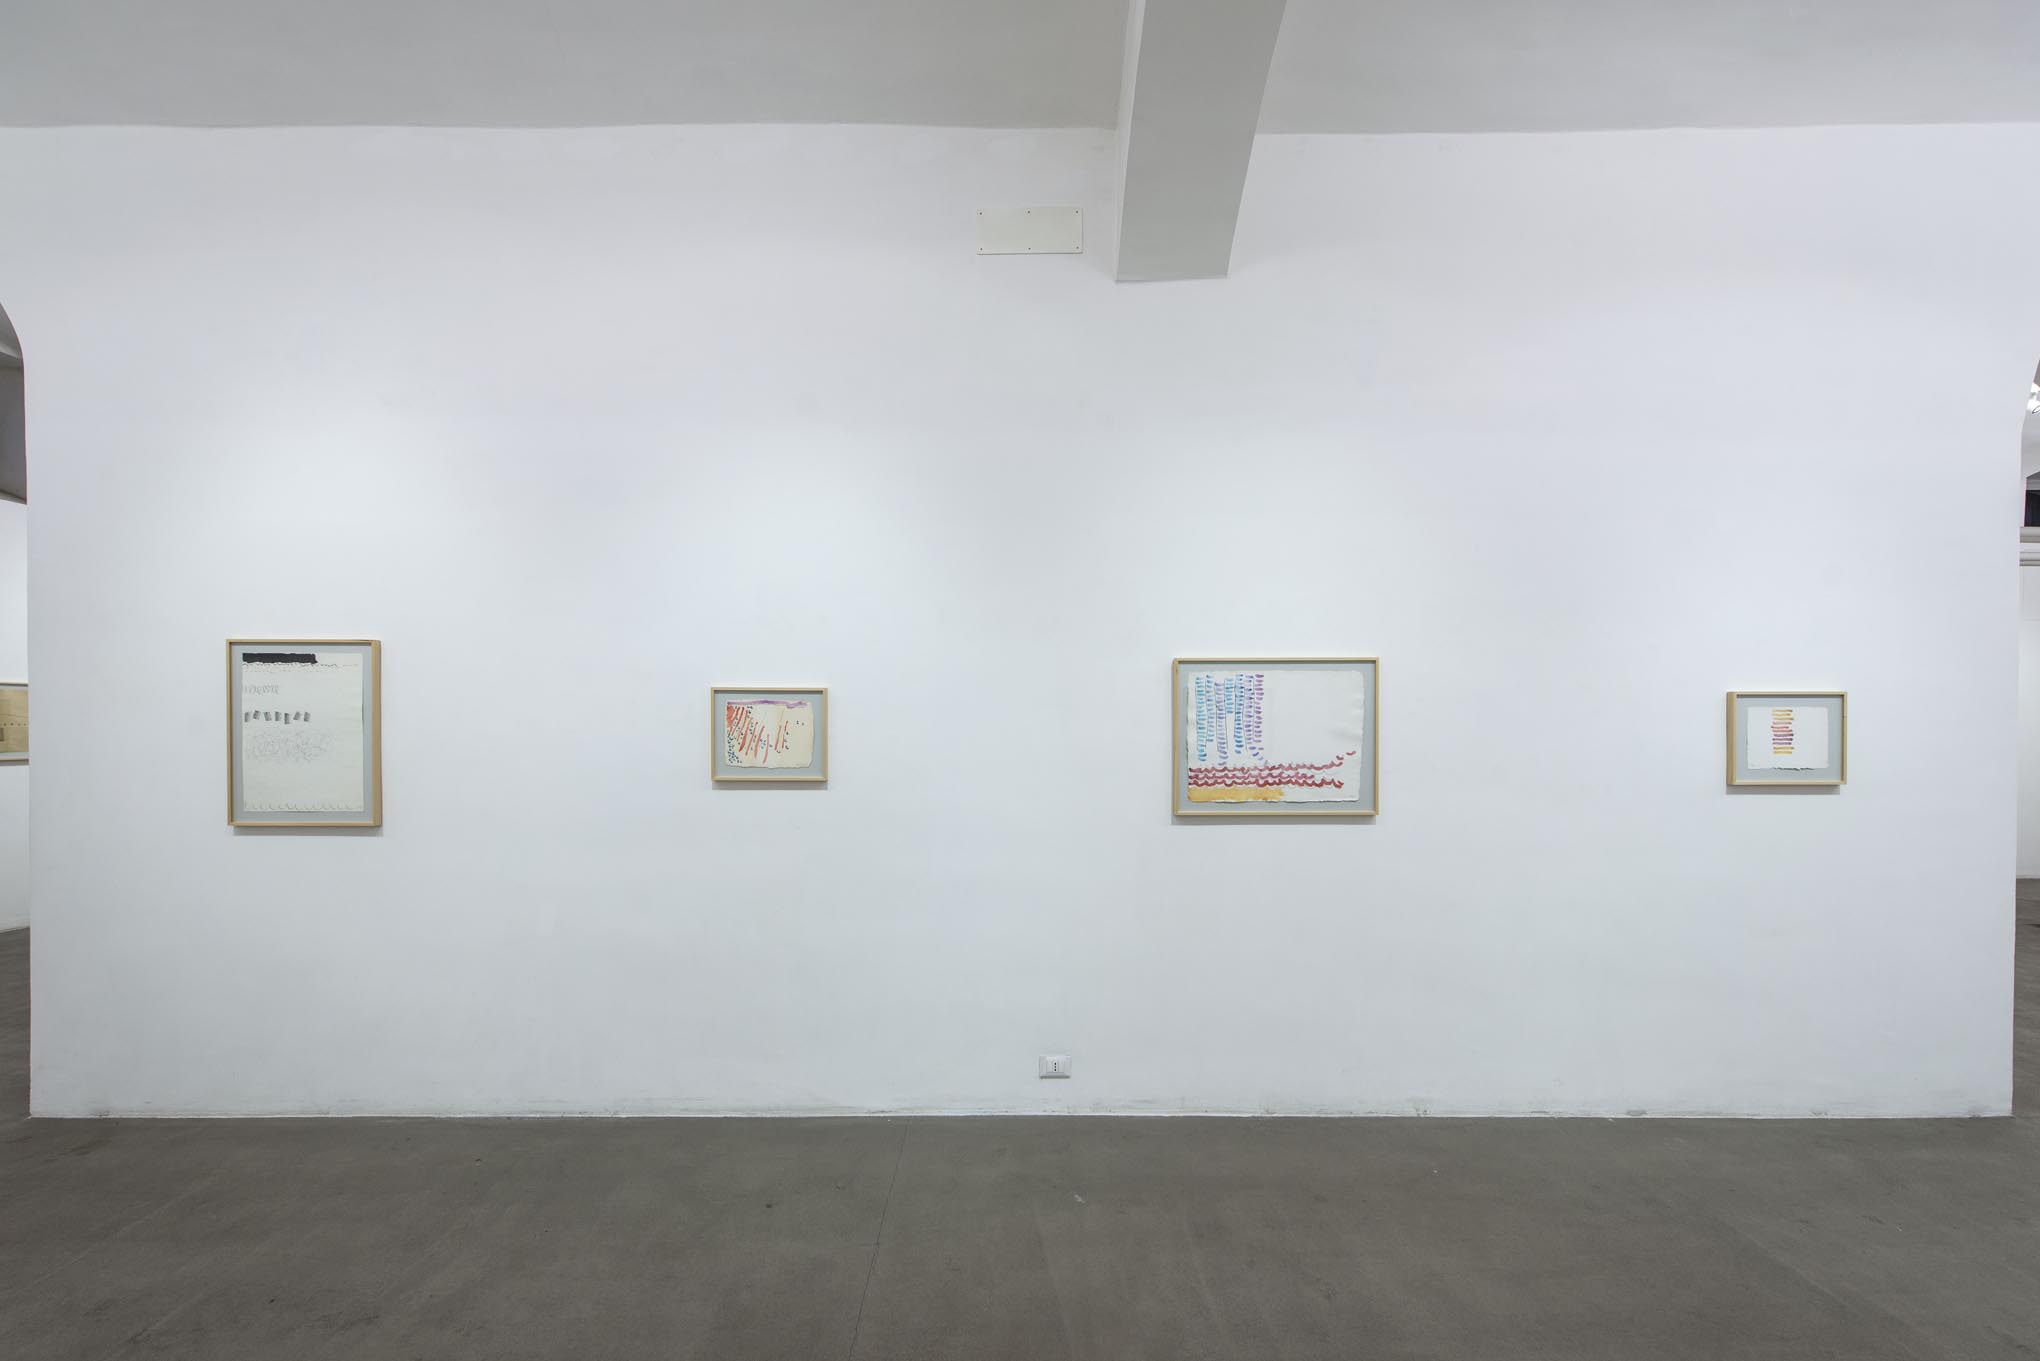 12. Giorgio Griffa: Works on Paper
Installation view, Roma, 2014, foto Giorgio Benni